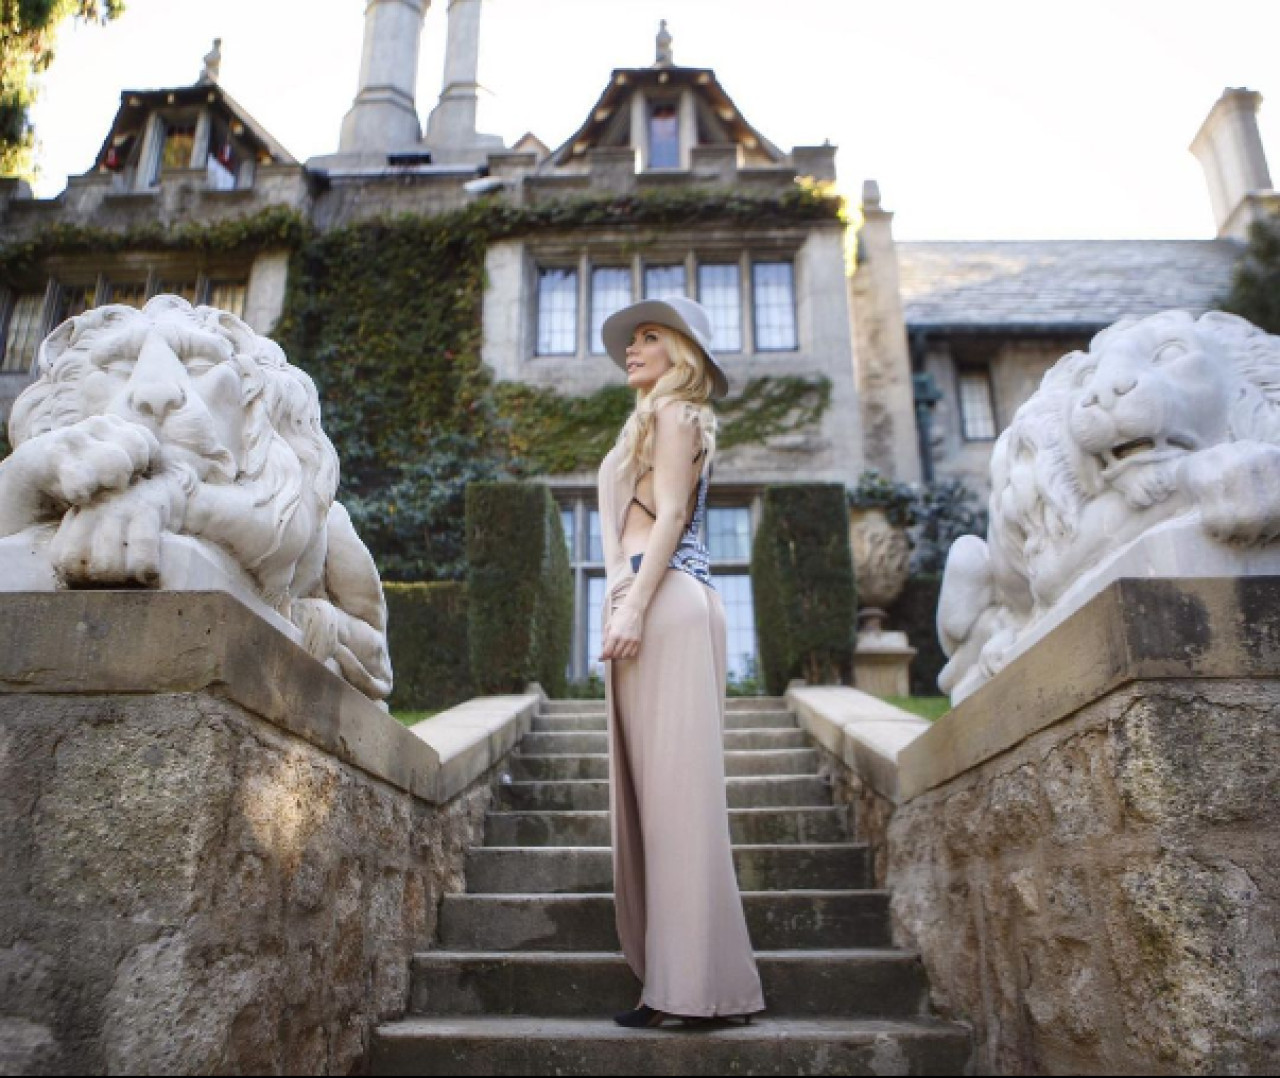 Crystal Hefner en la mansion Playboy. Foto: Instagram @CrystalHefner